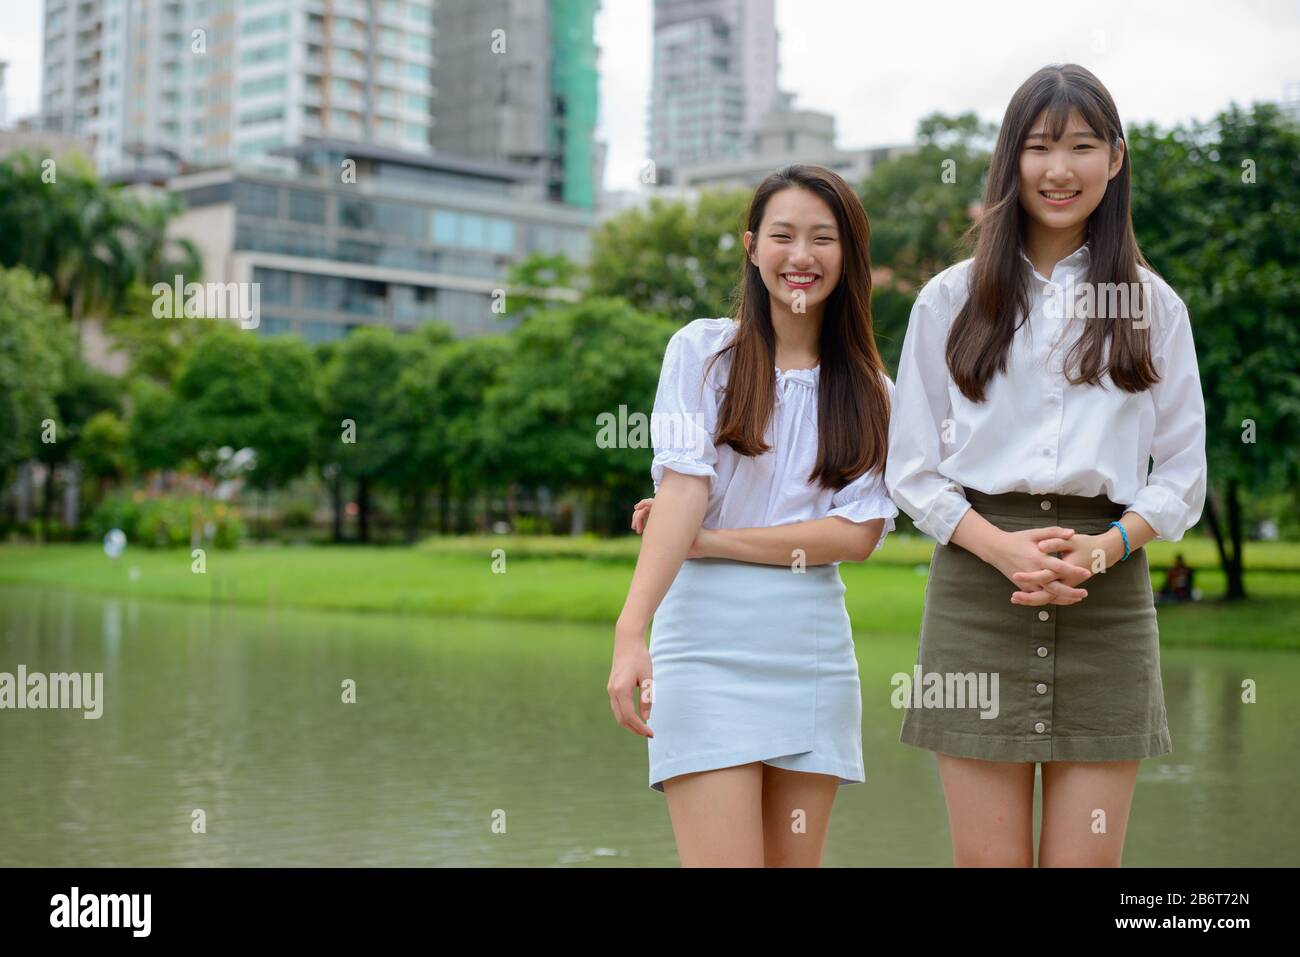 Deux jeunes filles adolescentes asiatiques joyeux s'amuser ensemble dans le parc Banque D'Images